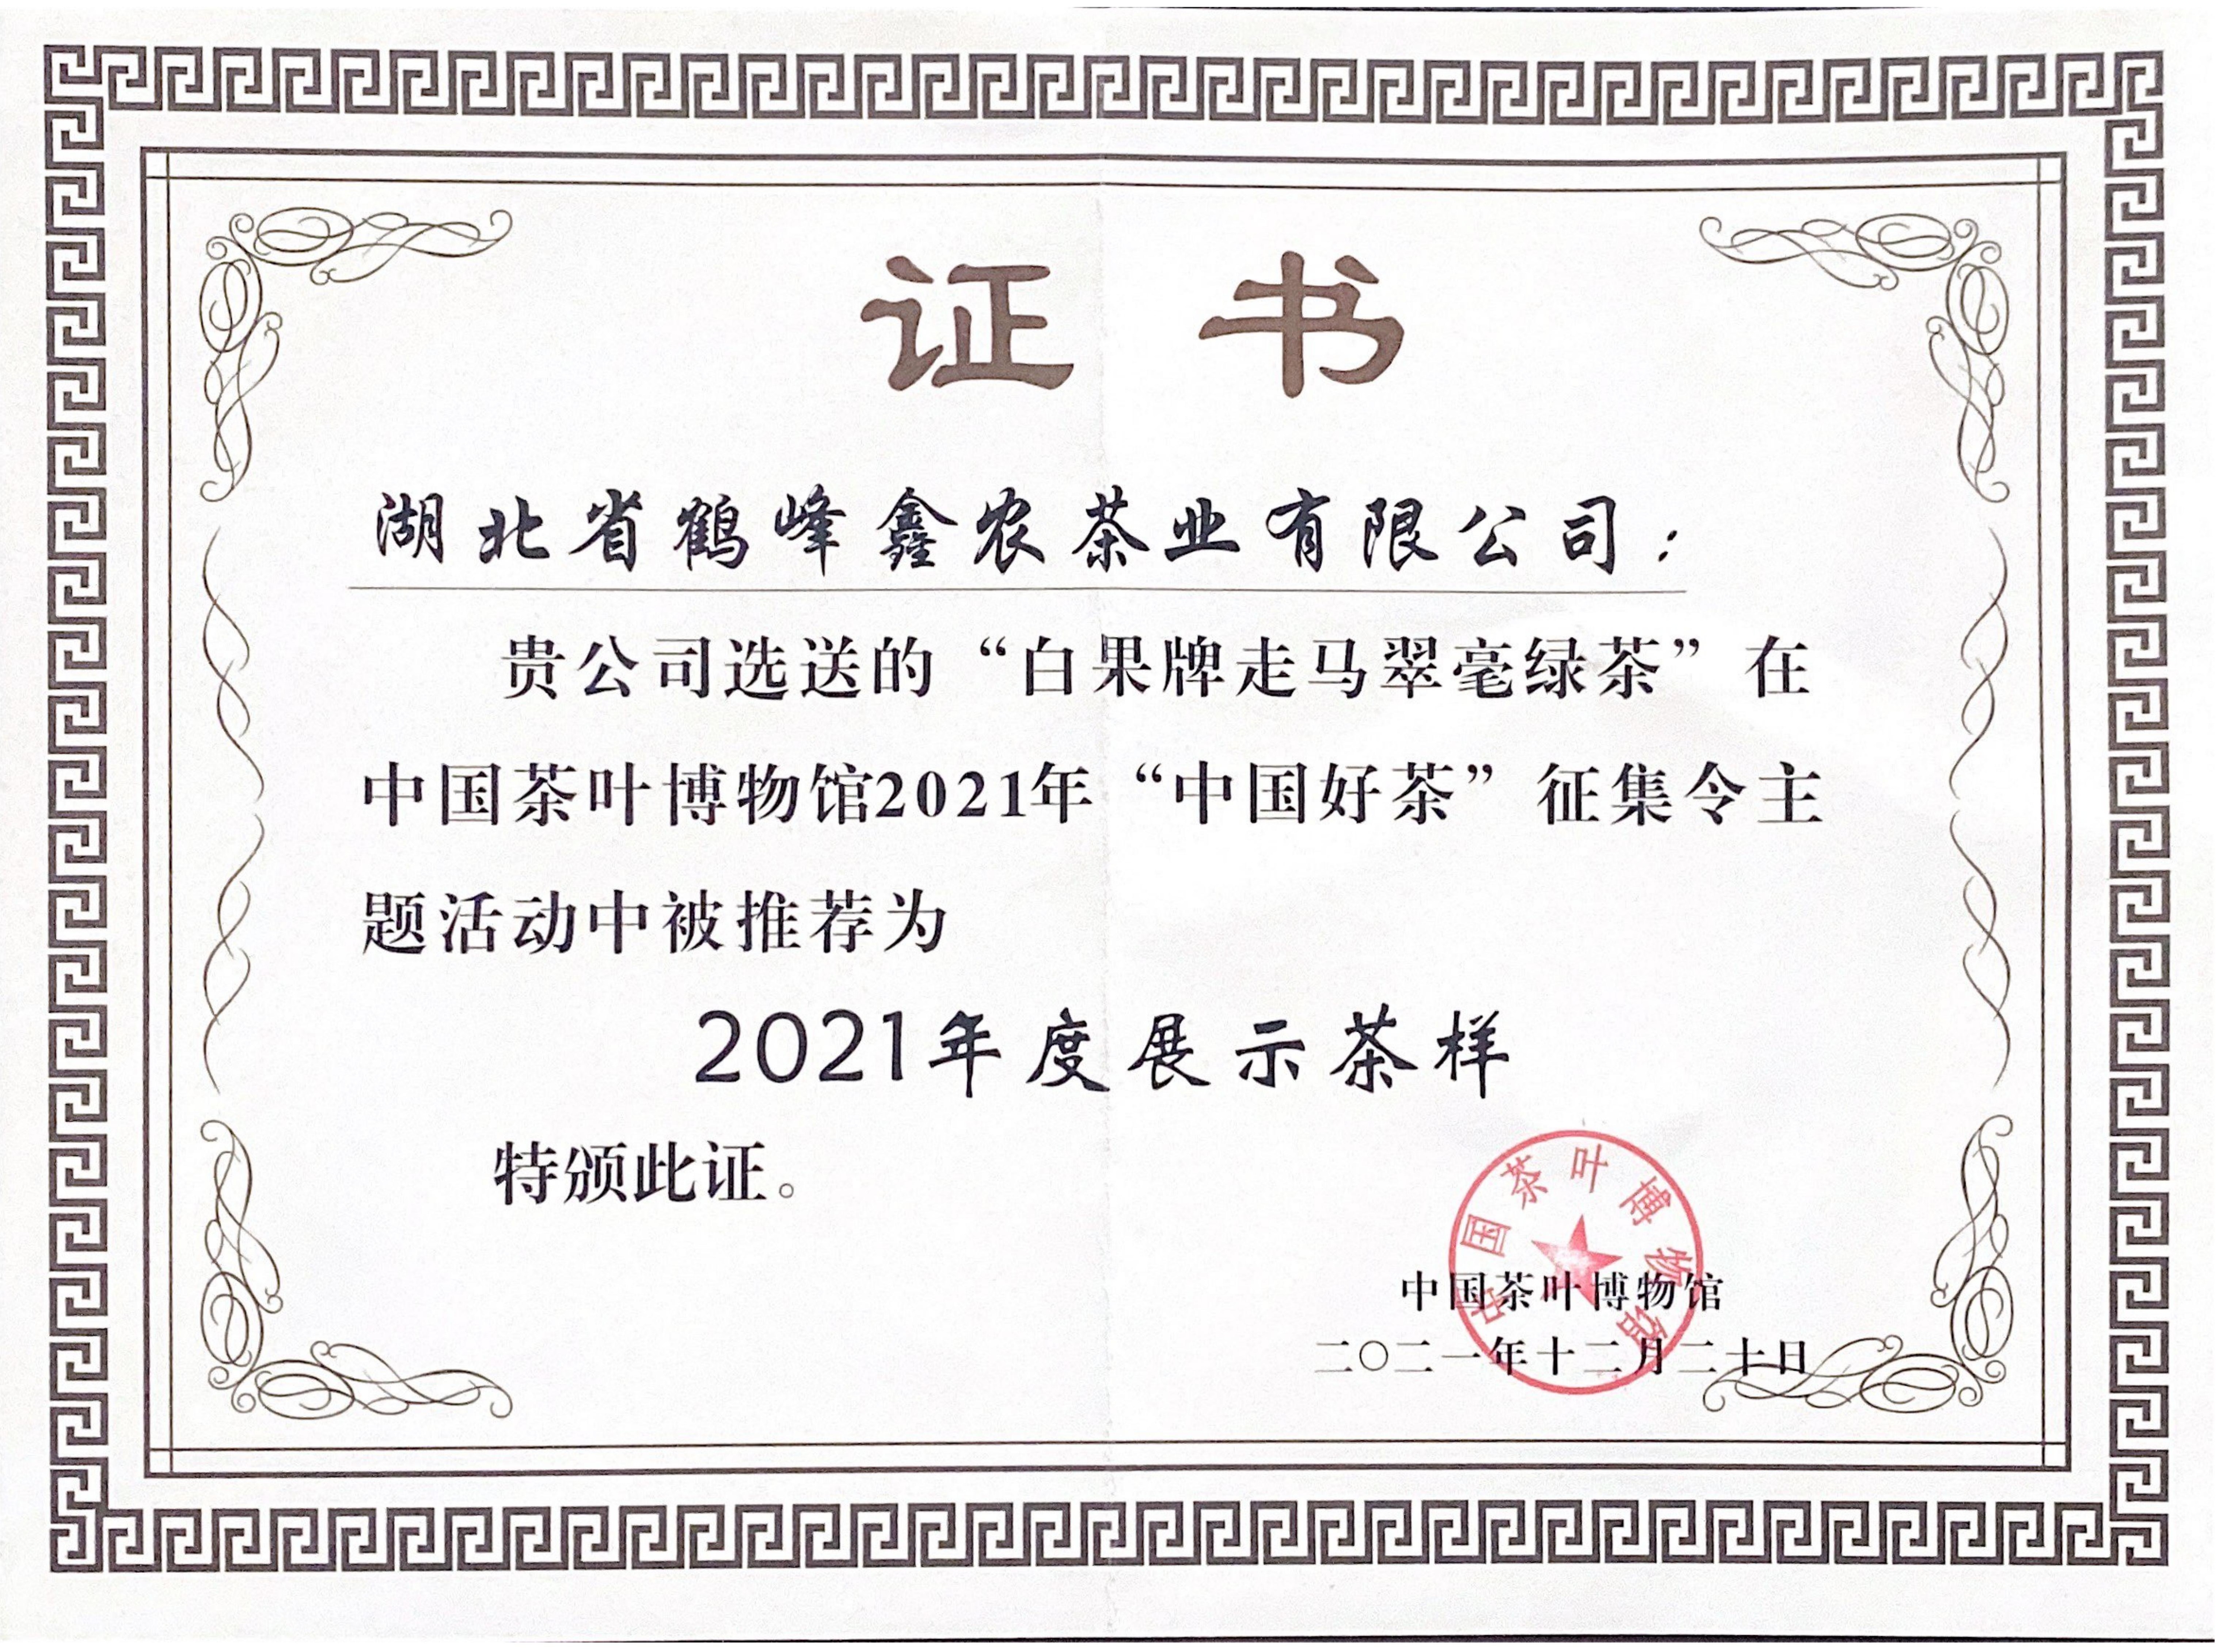 “白果牌走马翠毫绿茶”在中国茶叶博物馆2021年“中国好茶”征集令主题活动中被推荐为2021年度展示茶样